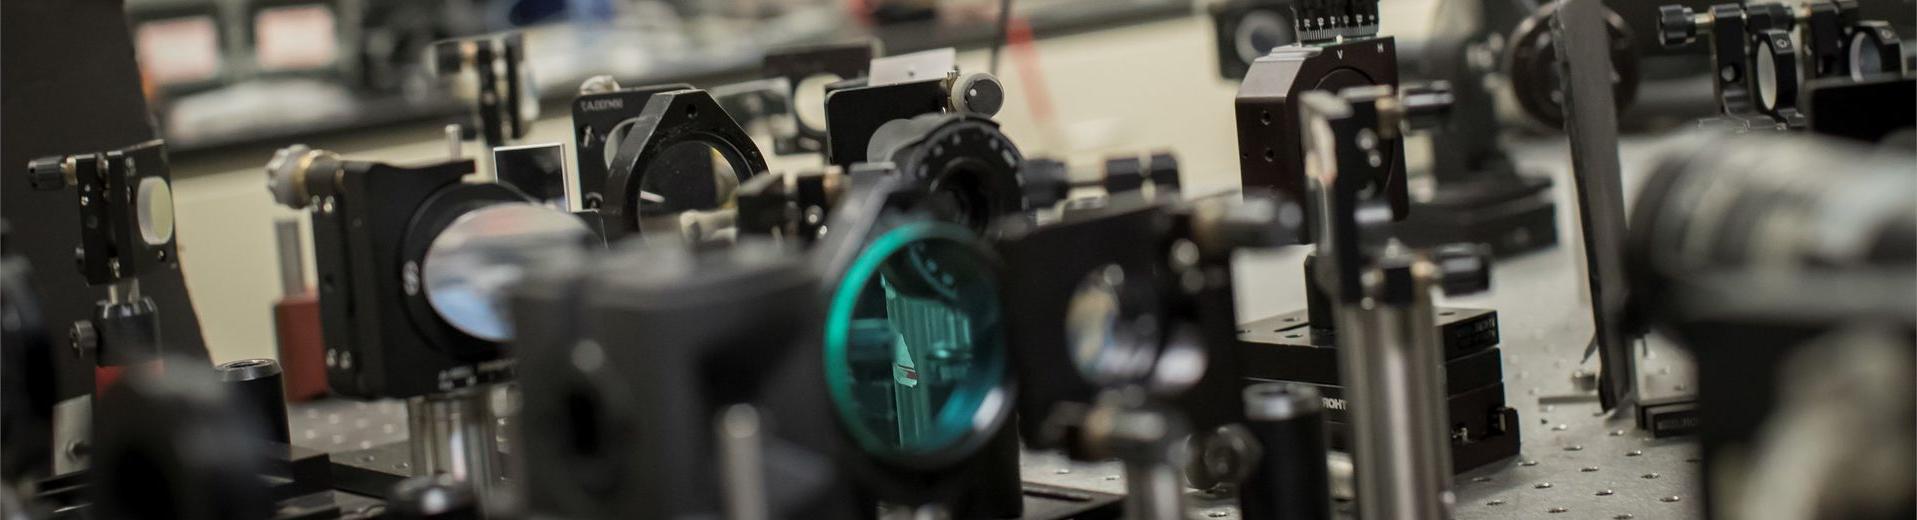 物理学学生在坦普尔实验室使用仪器进行研究. 